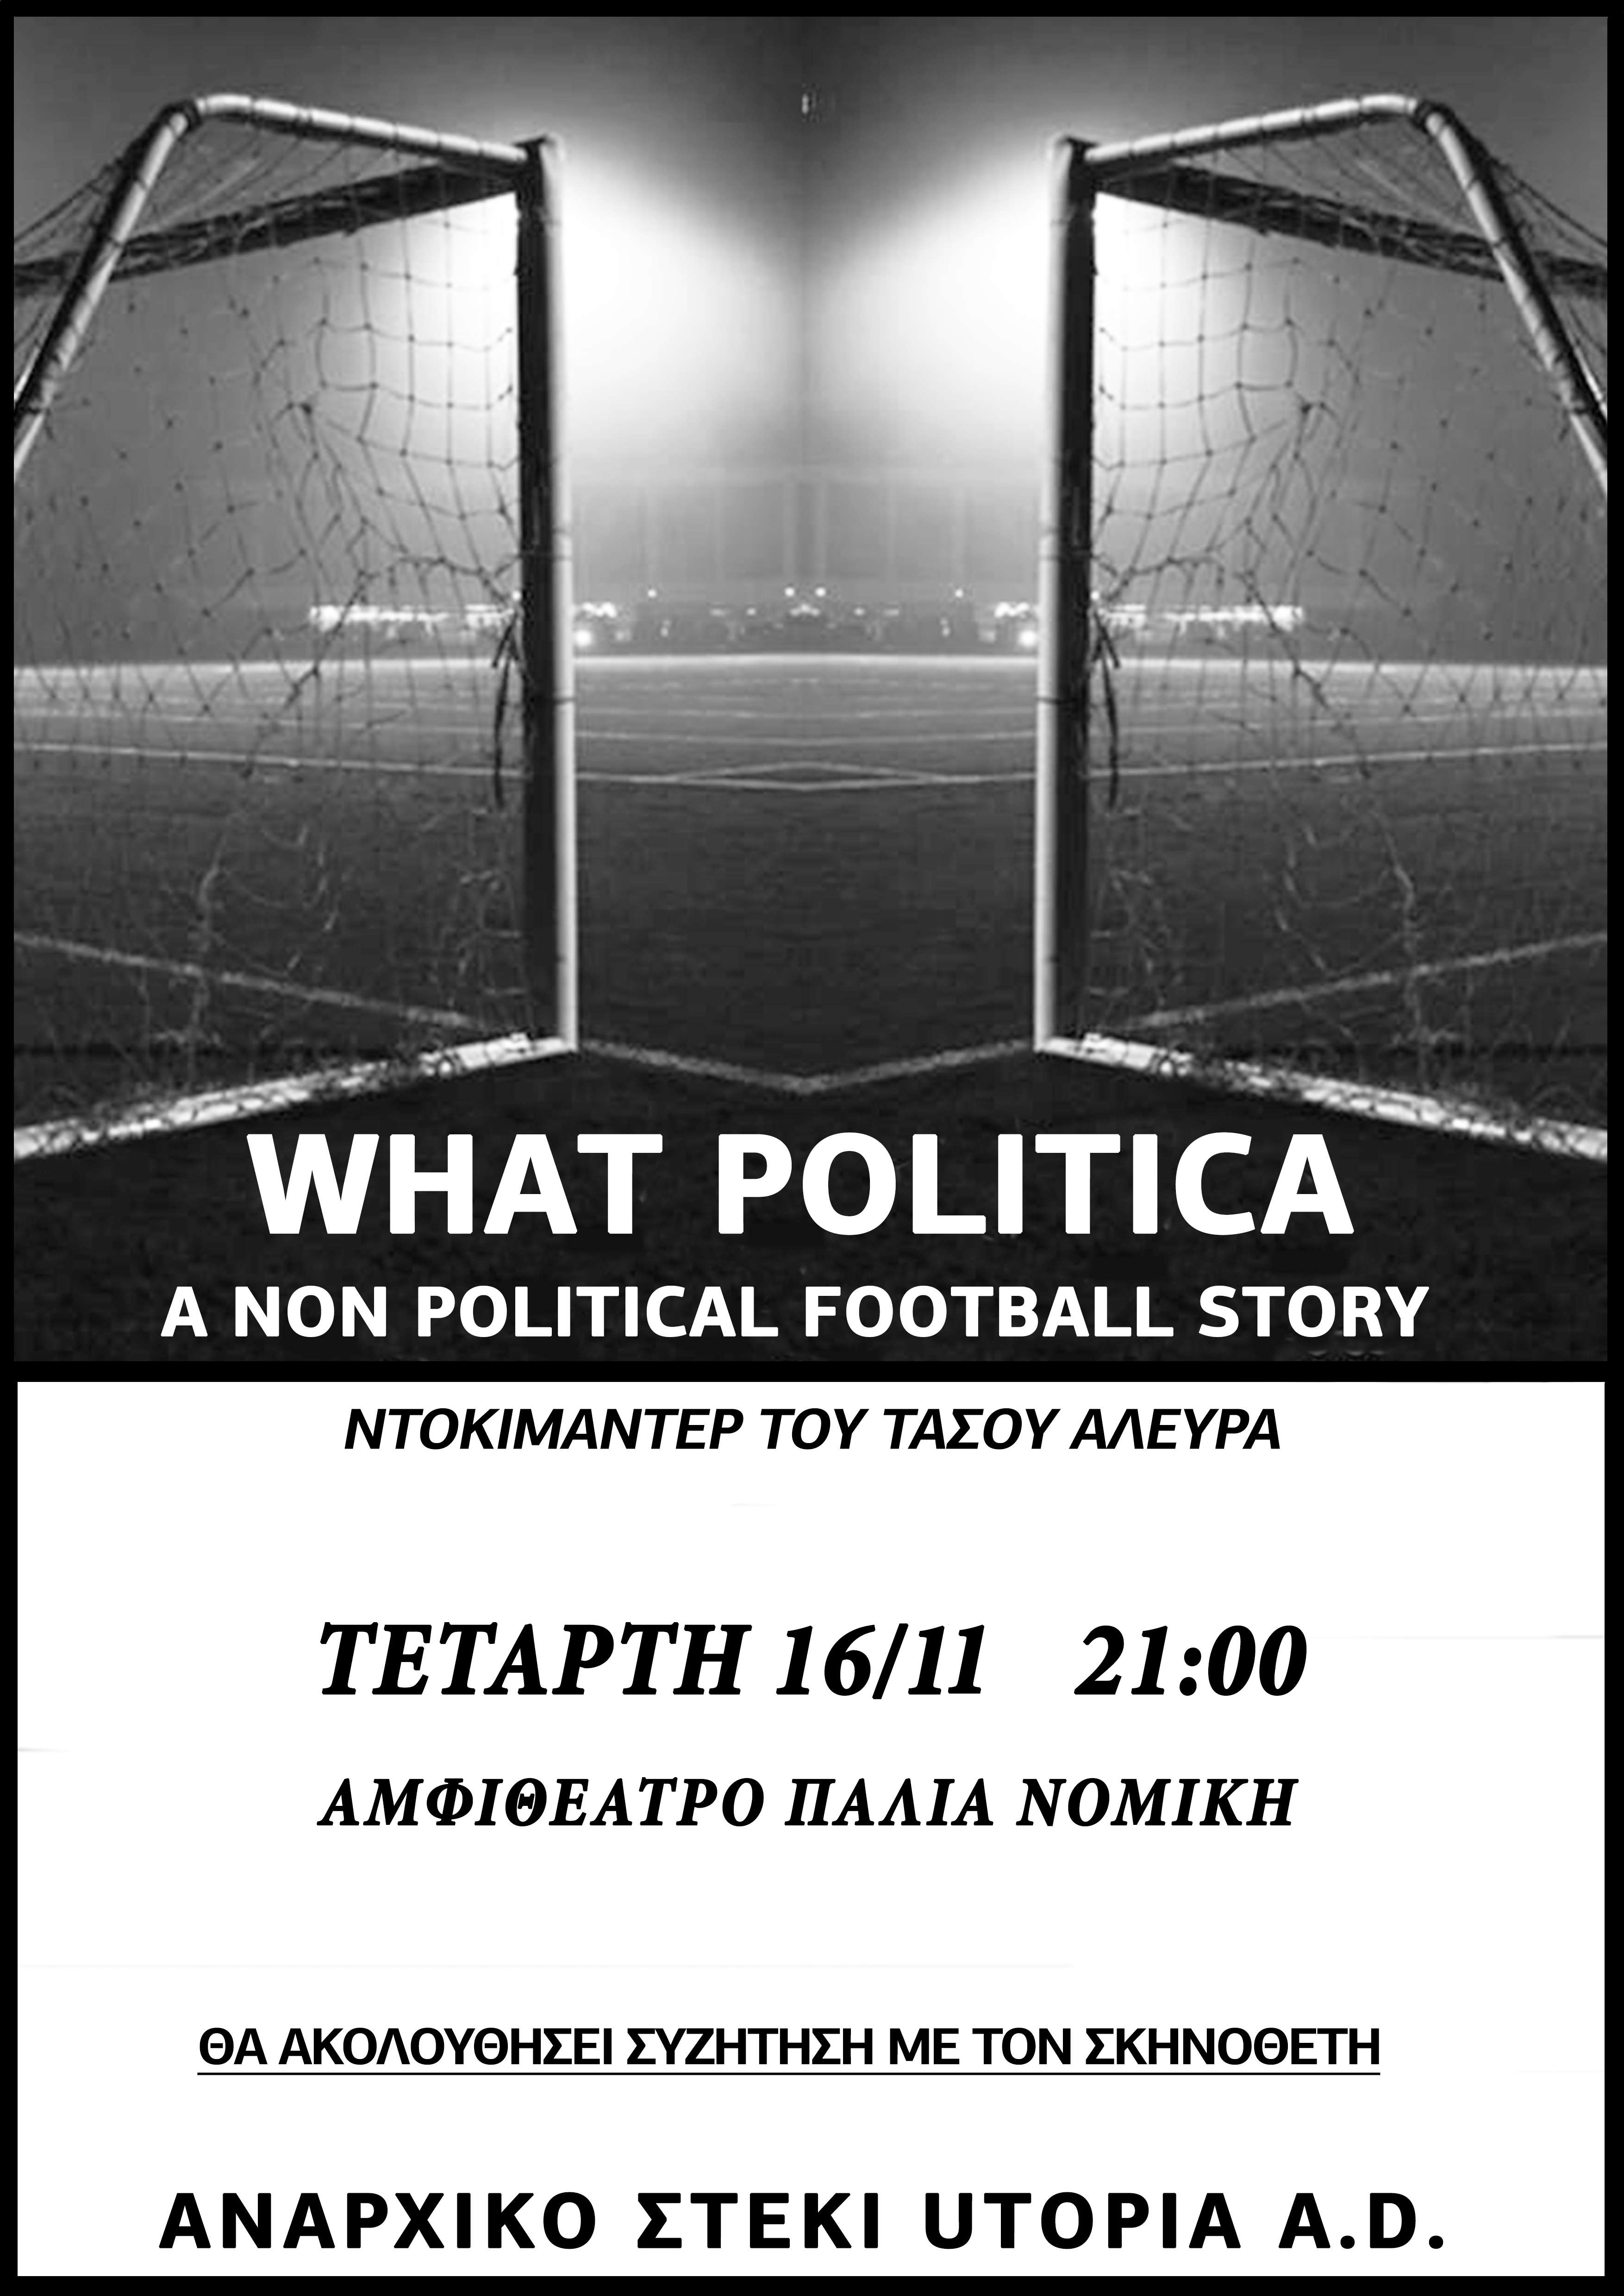 Κομοτηνή: Προβολή ντοκιμαντέρ What Politica [Τετάρτη 16/11, 21:00]